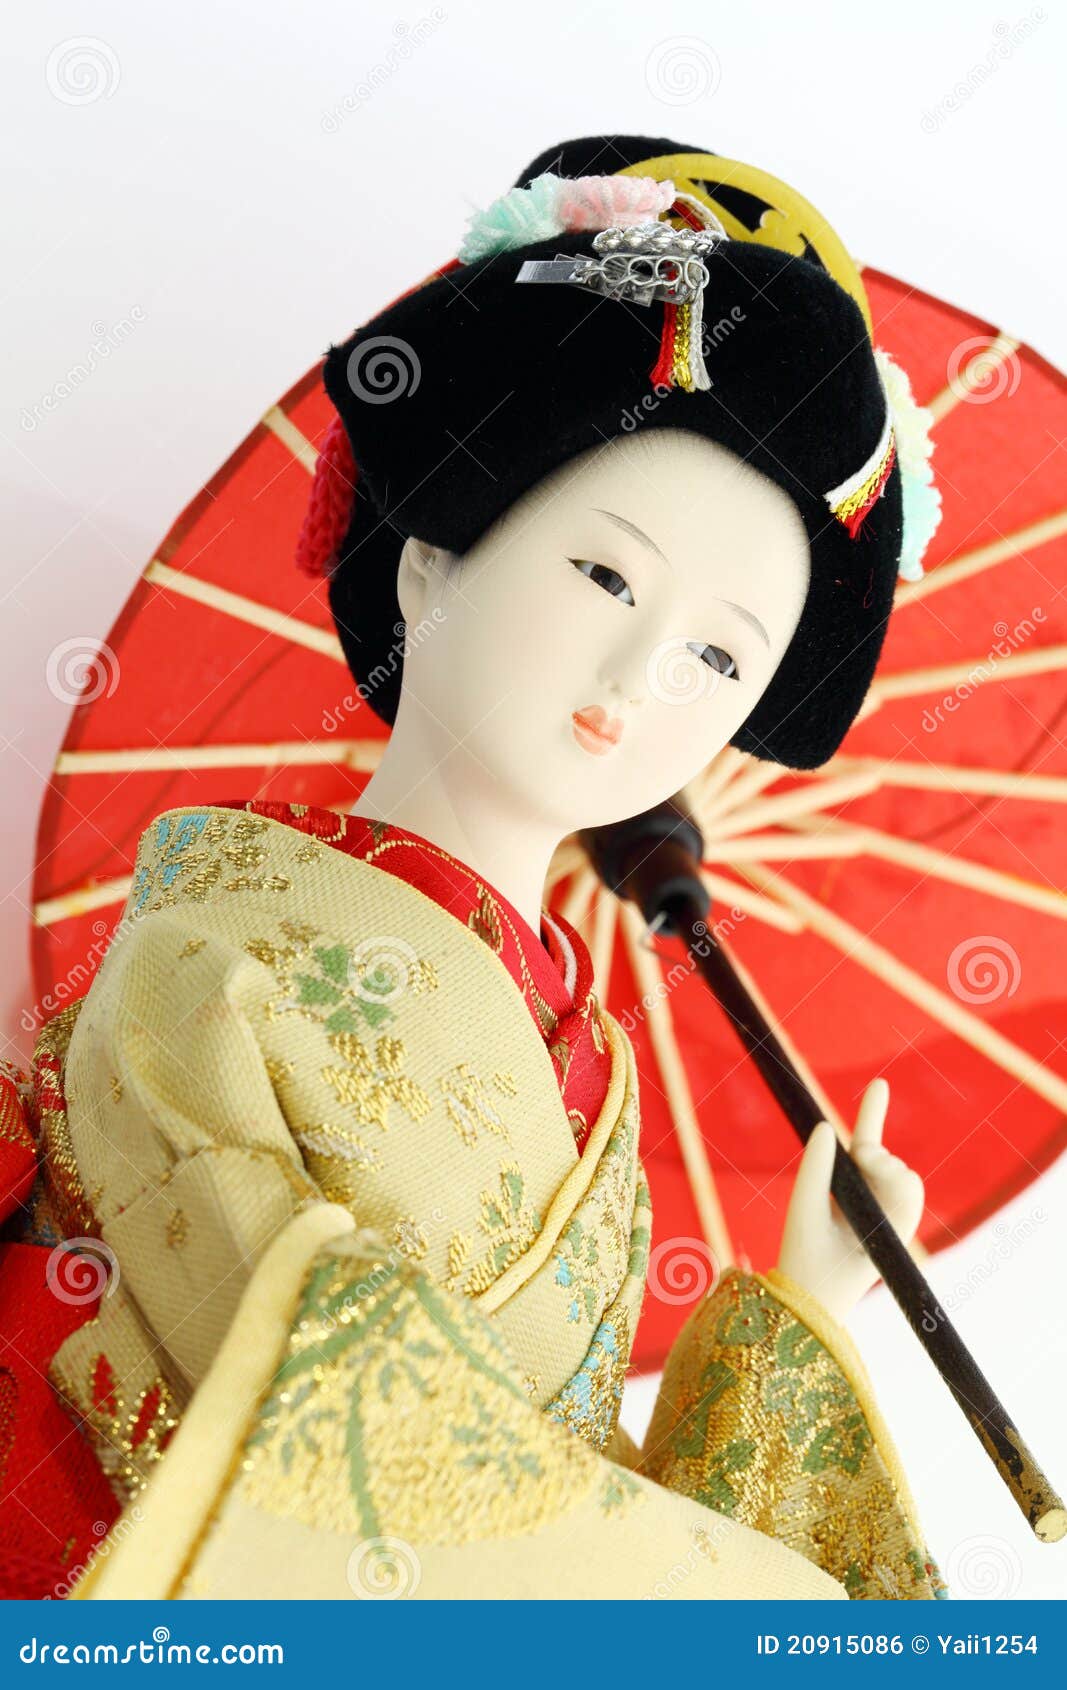 Japanese geisha doll stock photo. Image of gold, asia - 20915086